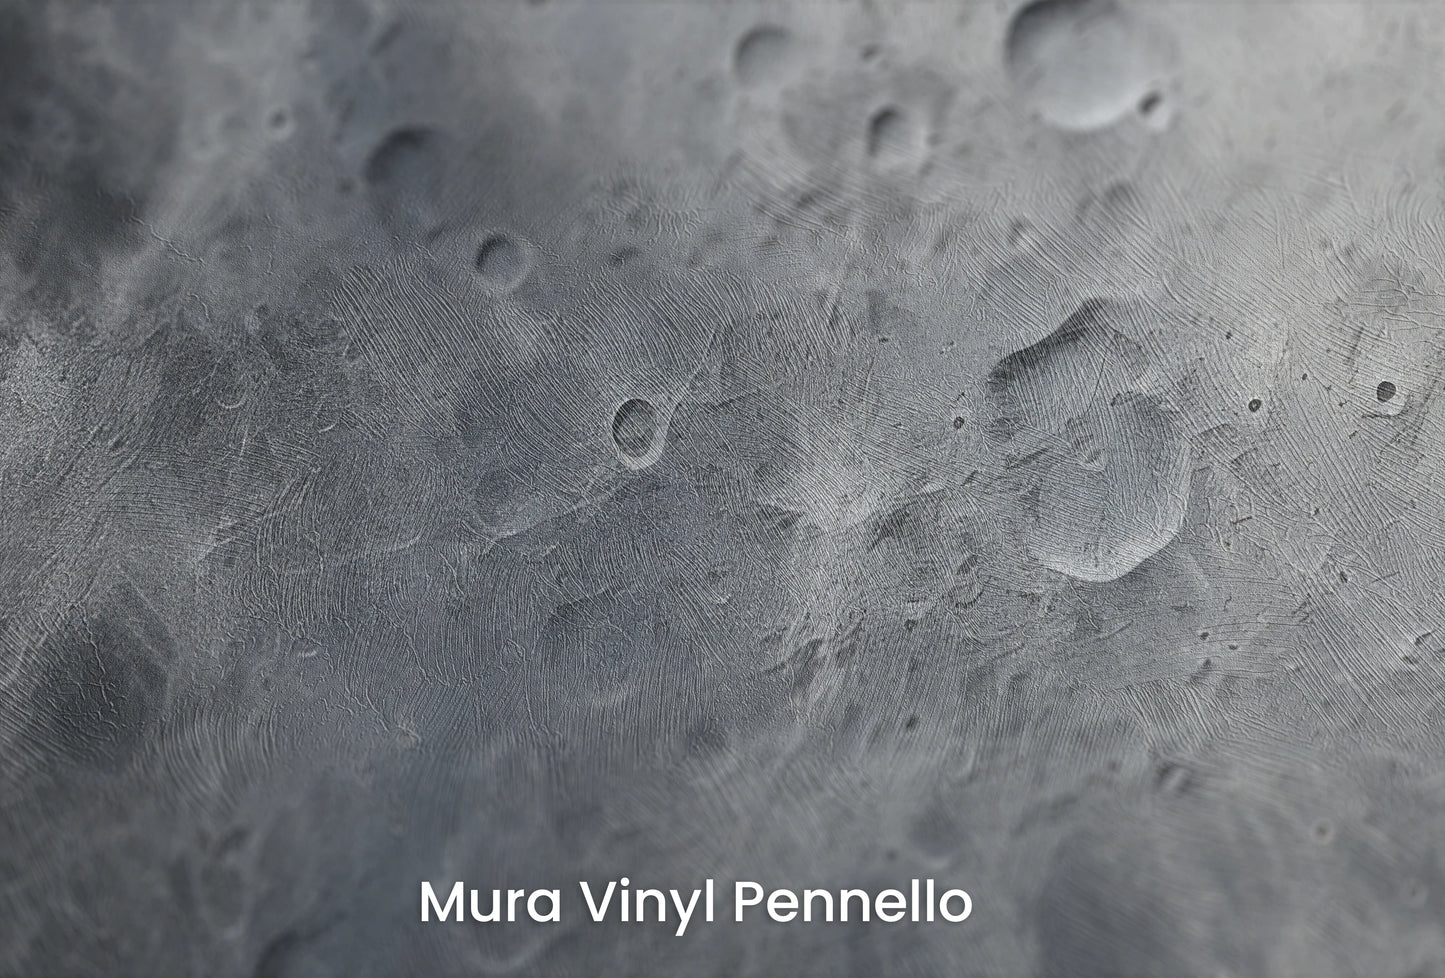 Zbliżenie na artystyczną fototapetę o nazwie Moon's Monochrome #2 na podłożu Mura Vinyl Pennello - faktura pociągnięć pędzla malarskiego.